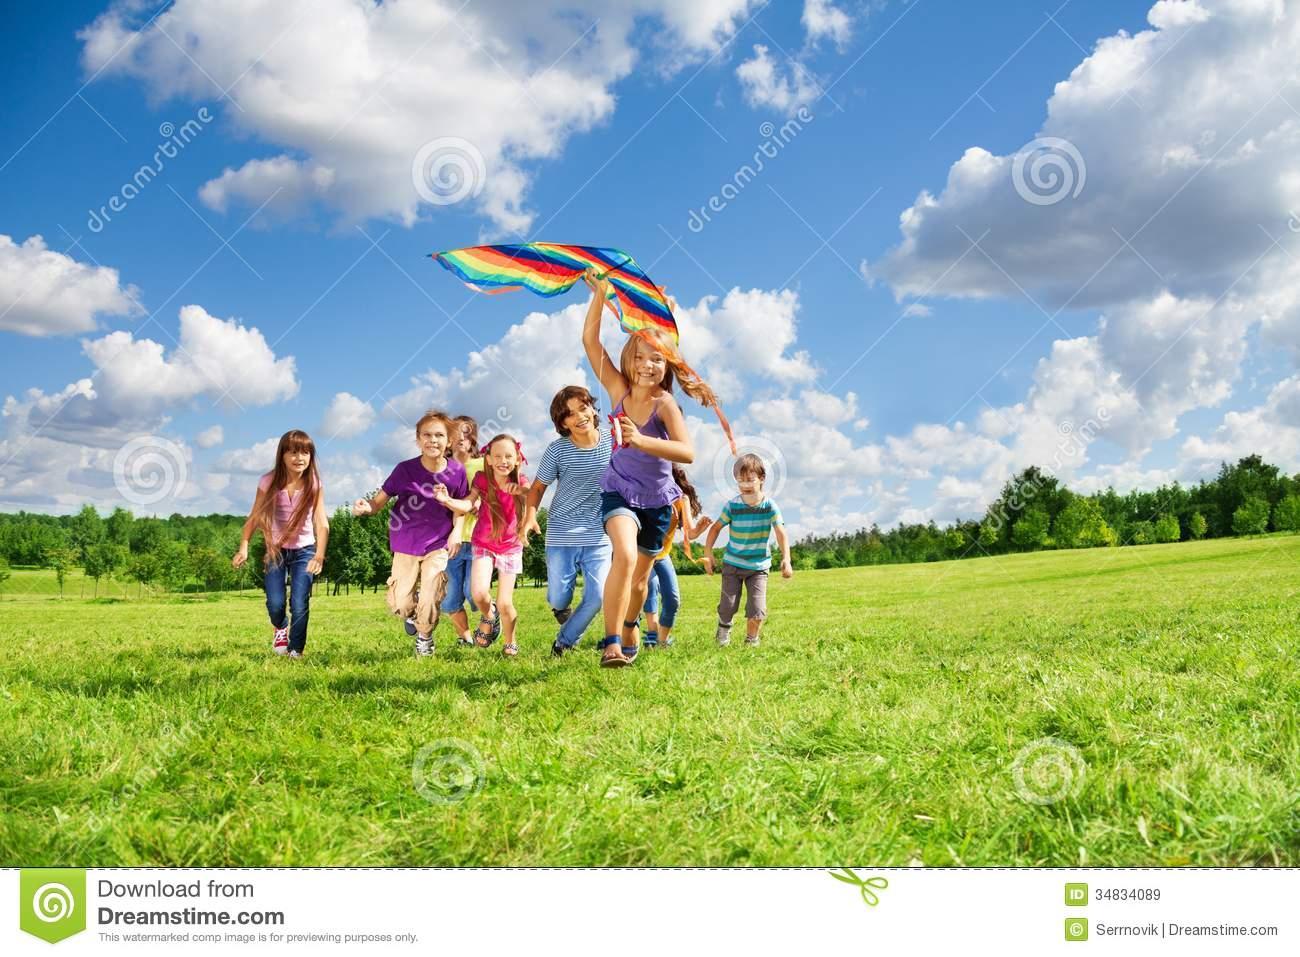 Viele Kinder Haben Spaß Mit Drachen Lizenzfreie ganzes Bild Viele Kinder